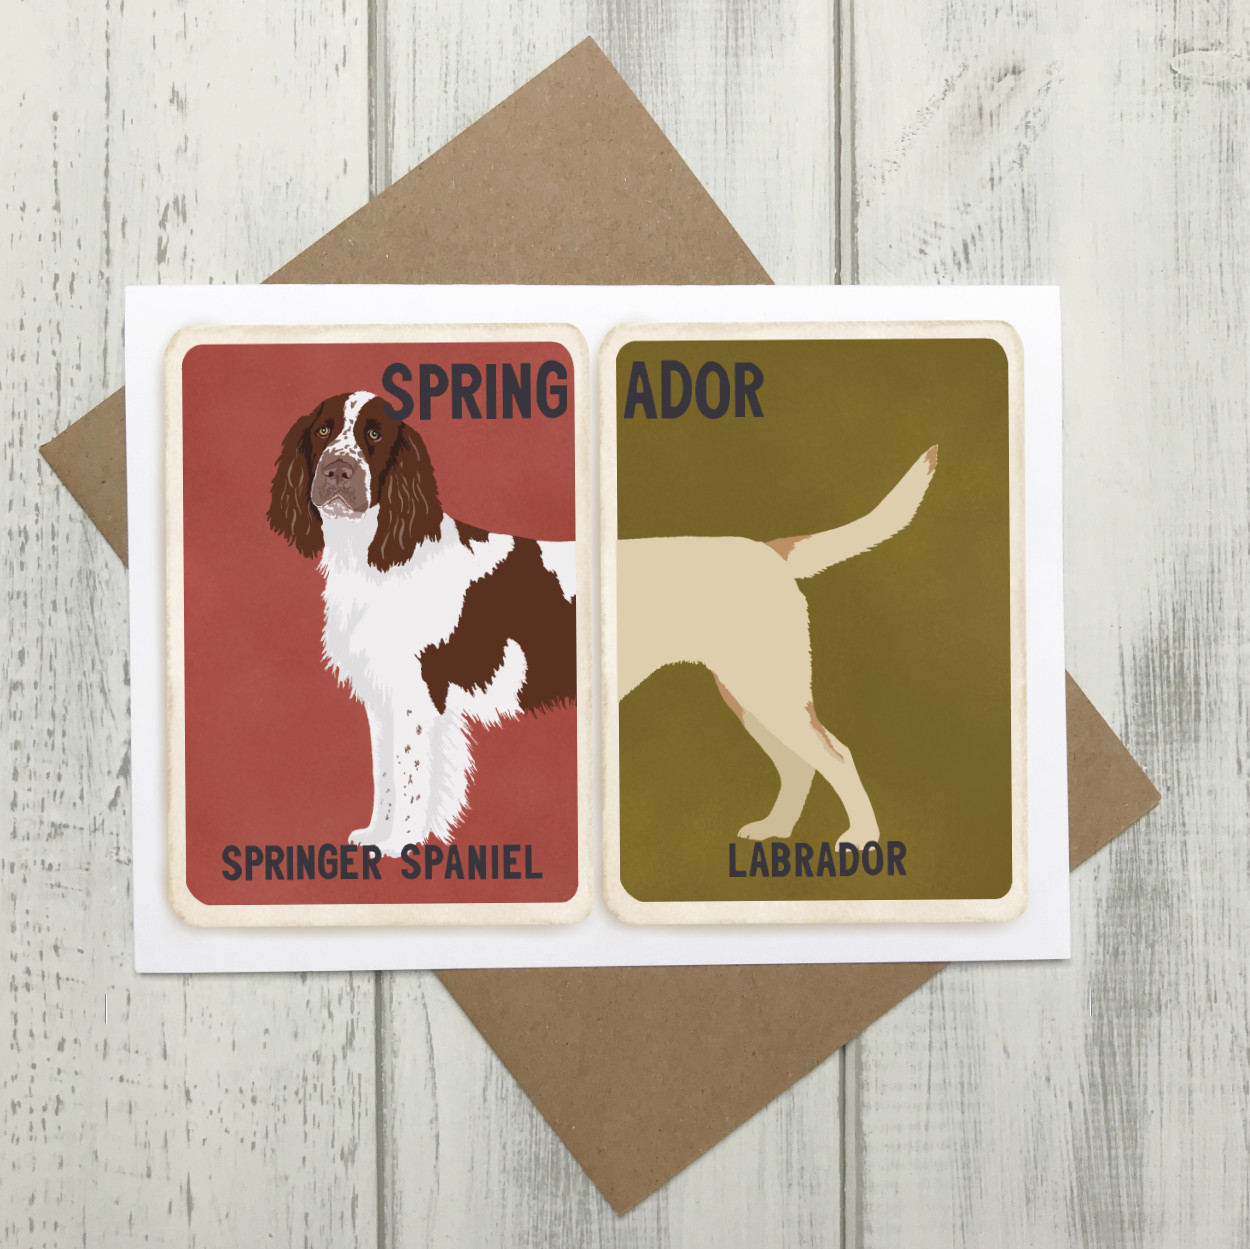 Springador Springer Spaniel Labrador Crossbreed Card | The Enlightened Hound